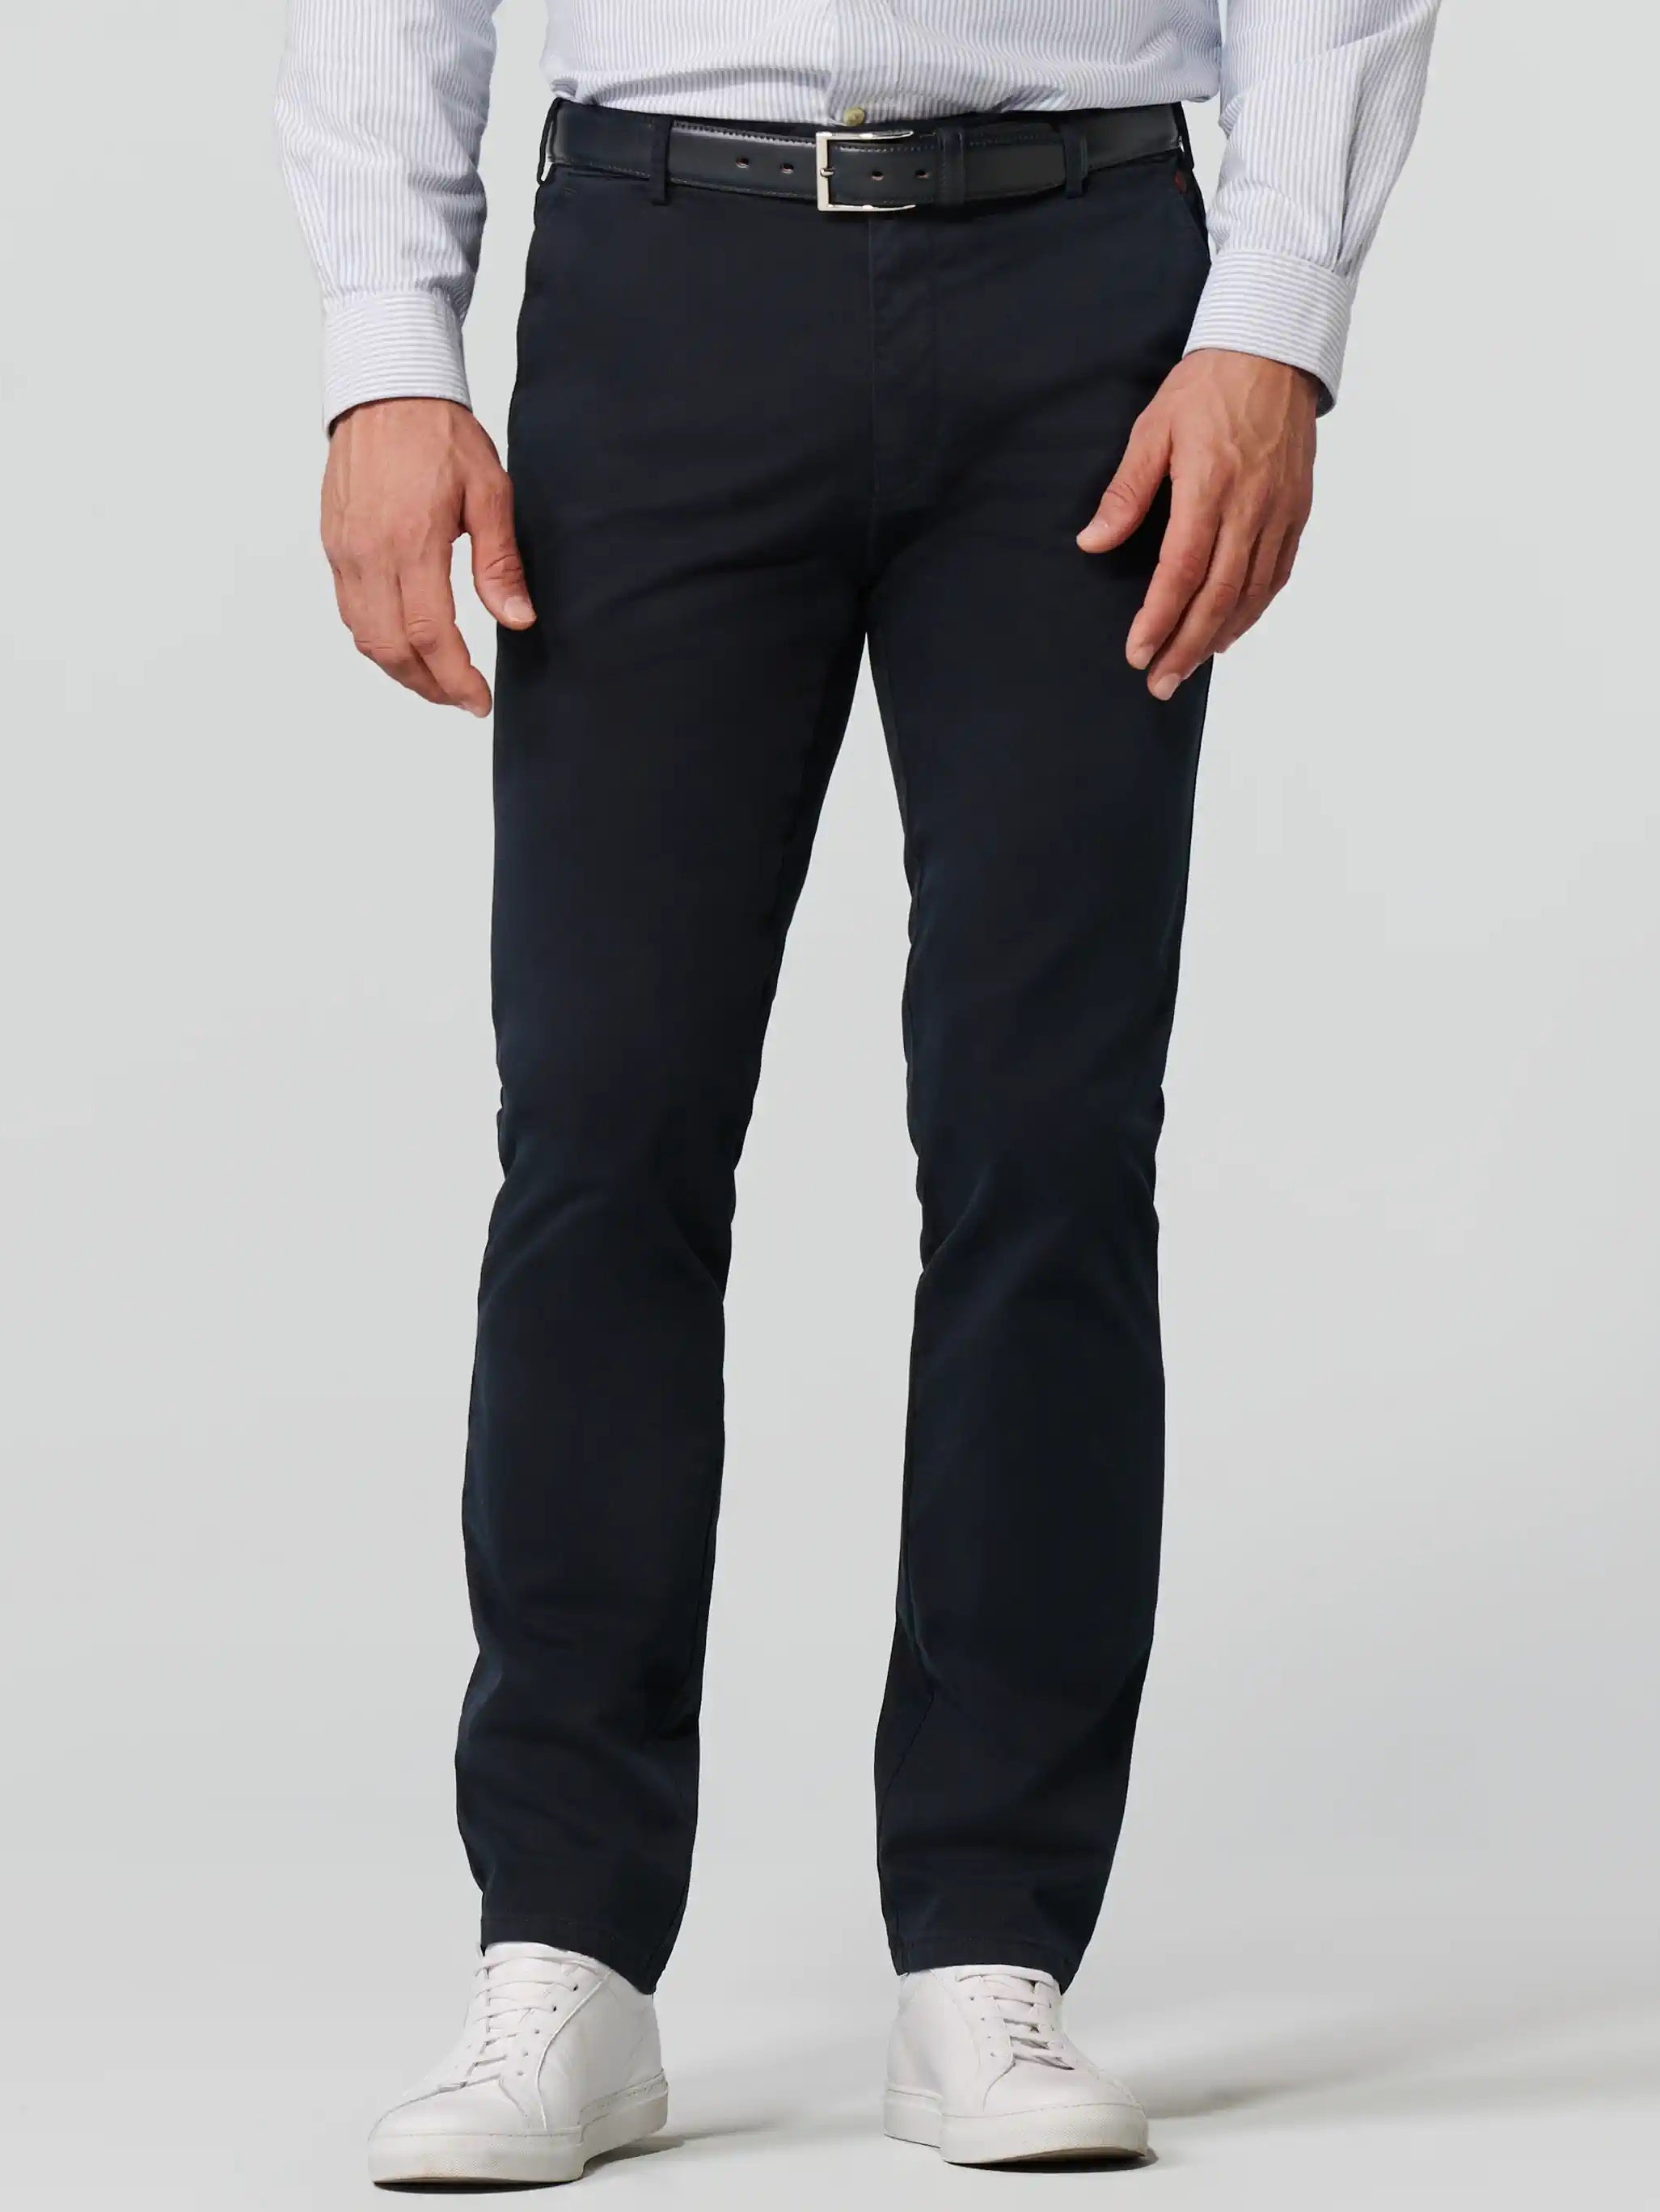 INCOTEX Italy Chinolino Luxury Cotton Slim Fit Golf Trousers Chino Pants 48  | eBay